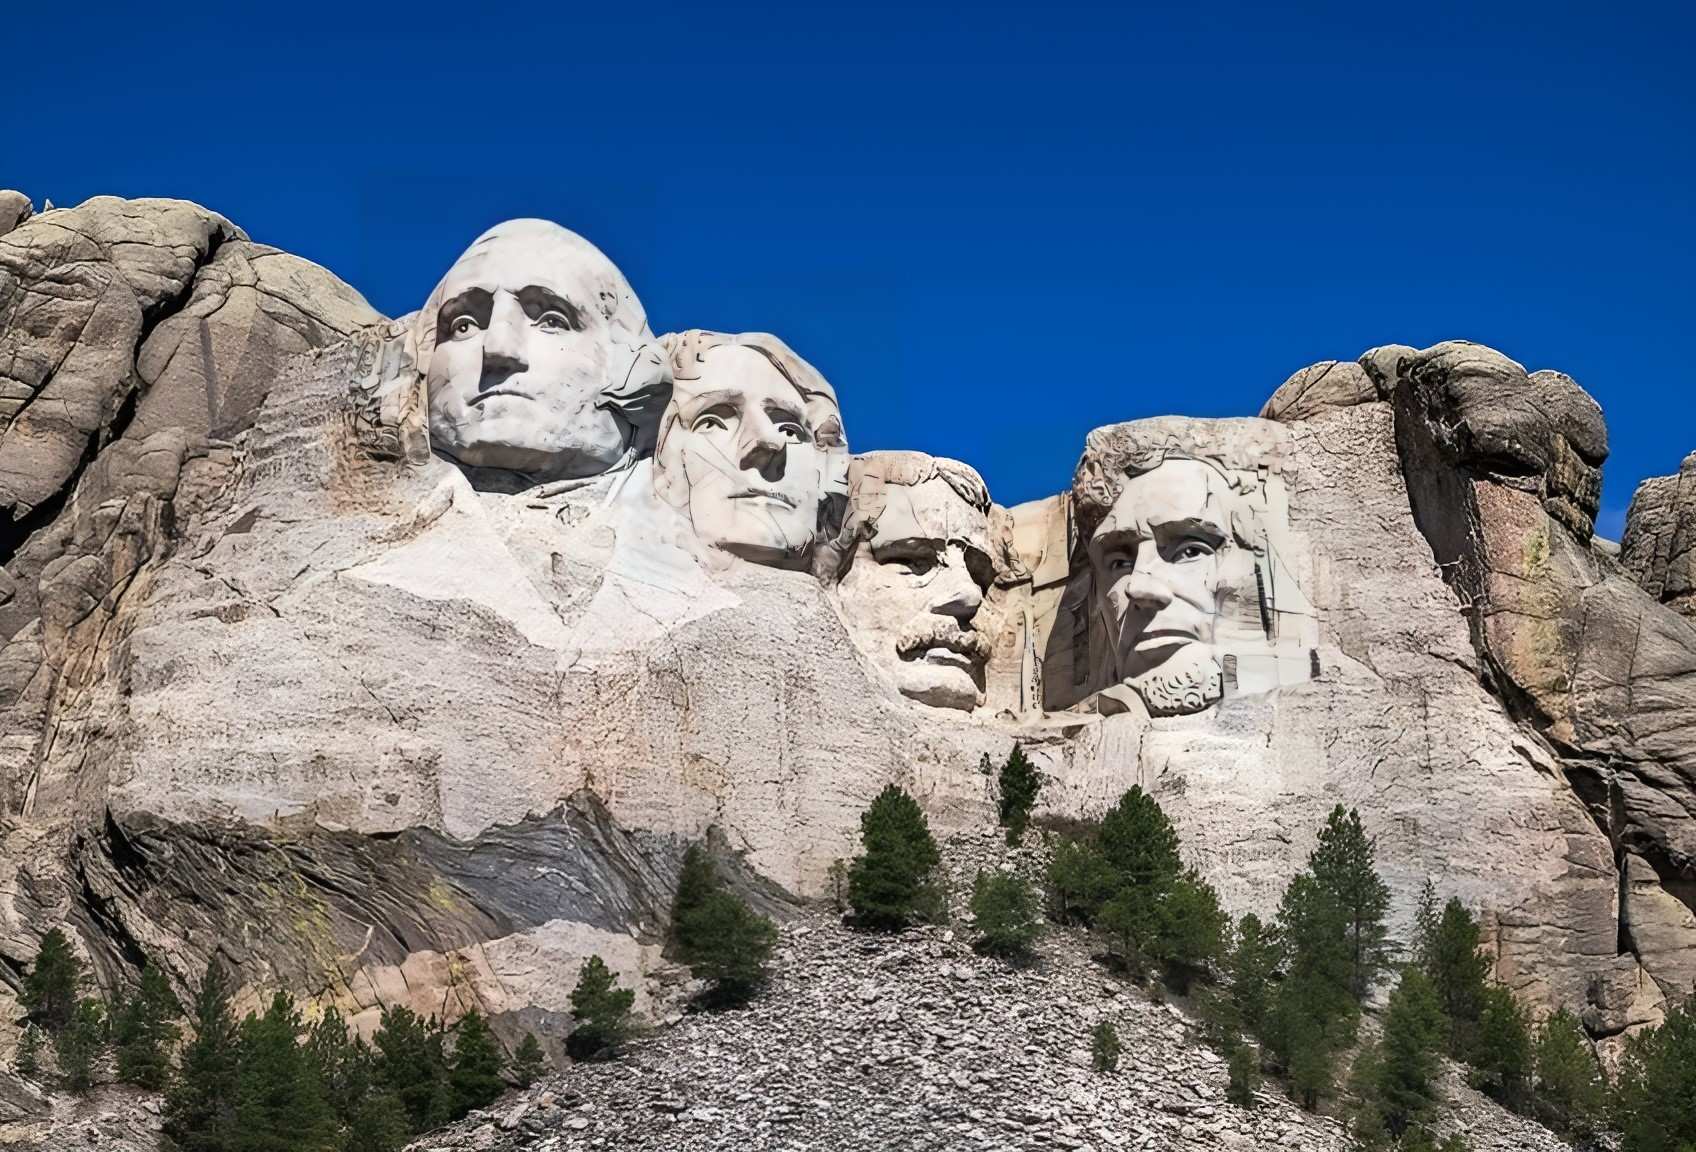 Núi Rushmore với những cái đầu được điêu khắc của George Washington, Thomas Jefferson, Theodore Roosevelt và Abraham Lincoln (từ trái sang phải), được điêu khắc bởi Gutzon Borglum. Nằm ở Nam Dakota, Hoa Kỳ; Thomas Wolf, www.foto-tw.de , CC BY-SA 3.0 , qua Wikimedia Commons